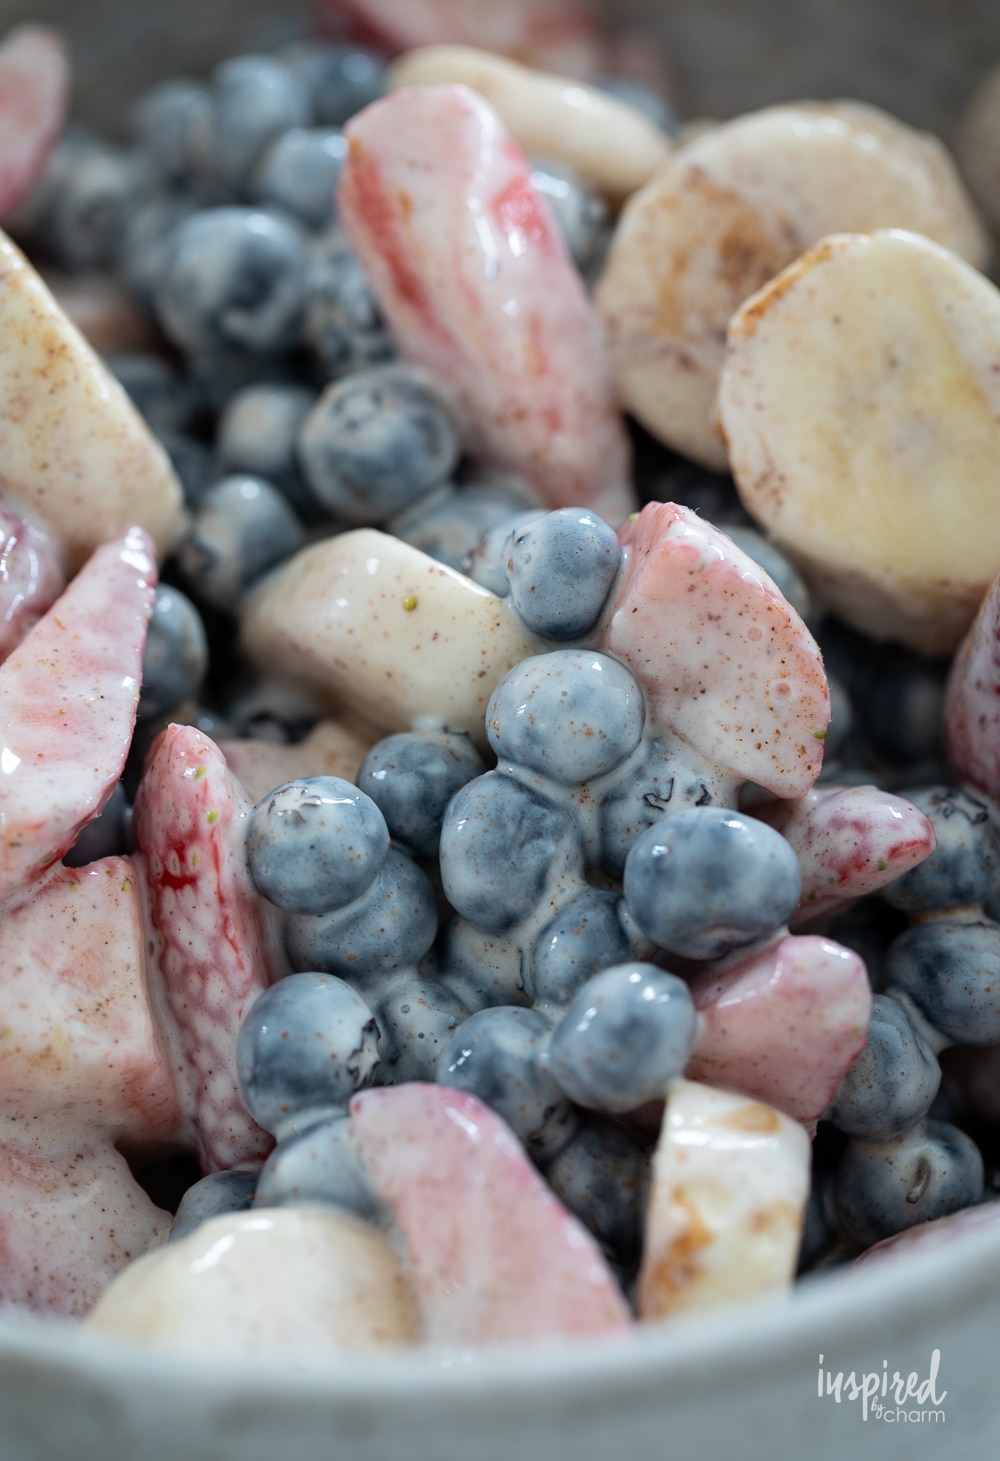 blueberries, strawberries, and bananas with yogurt.